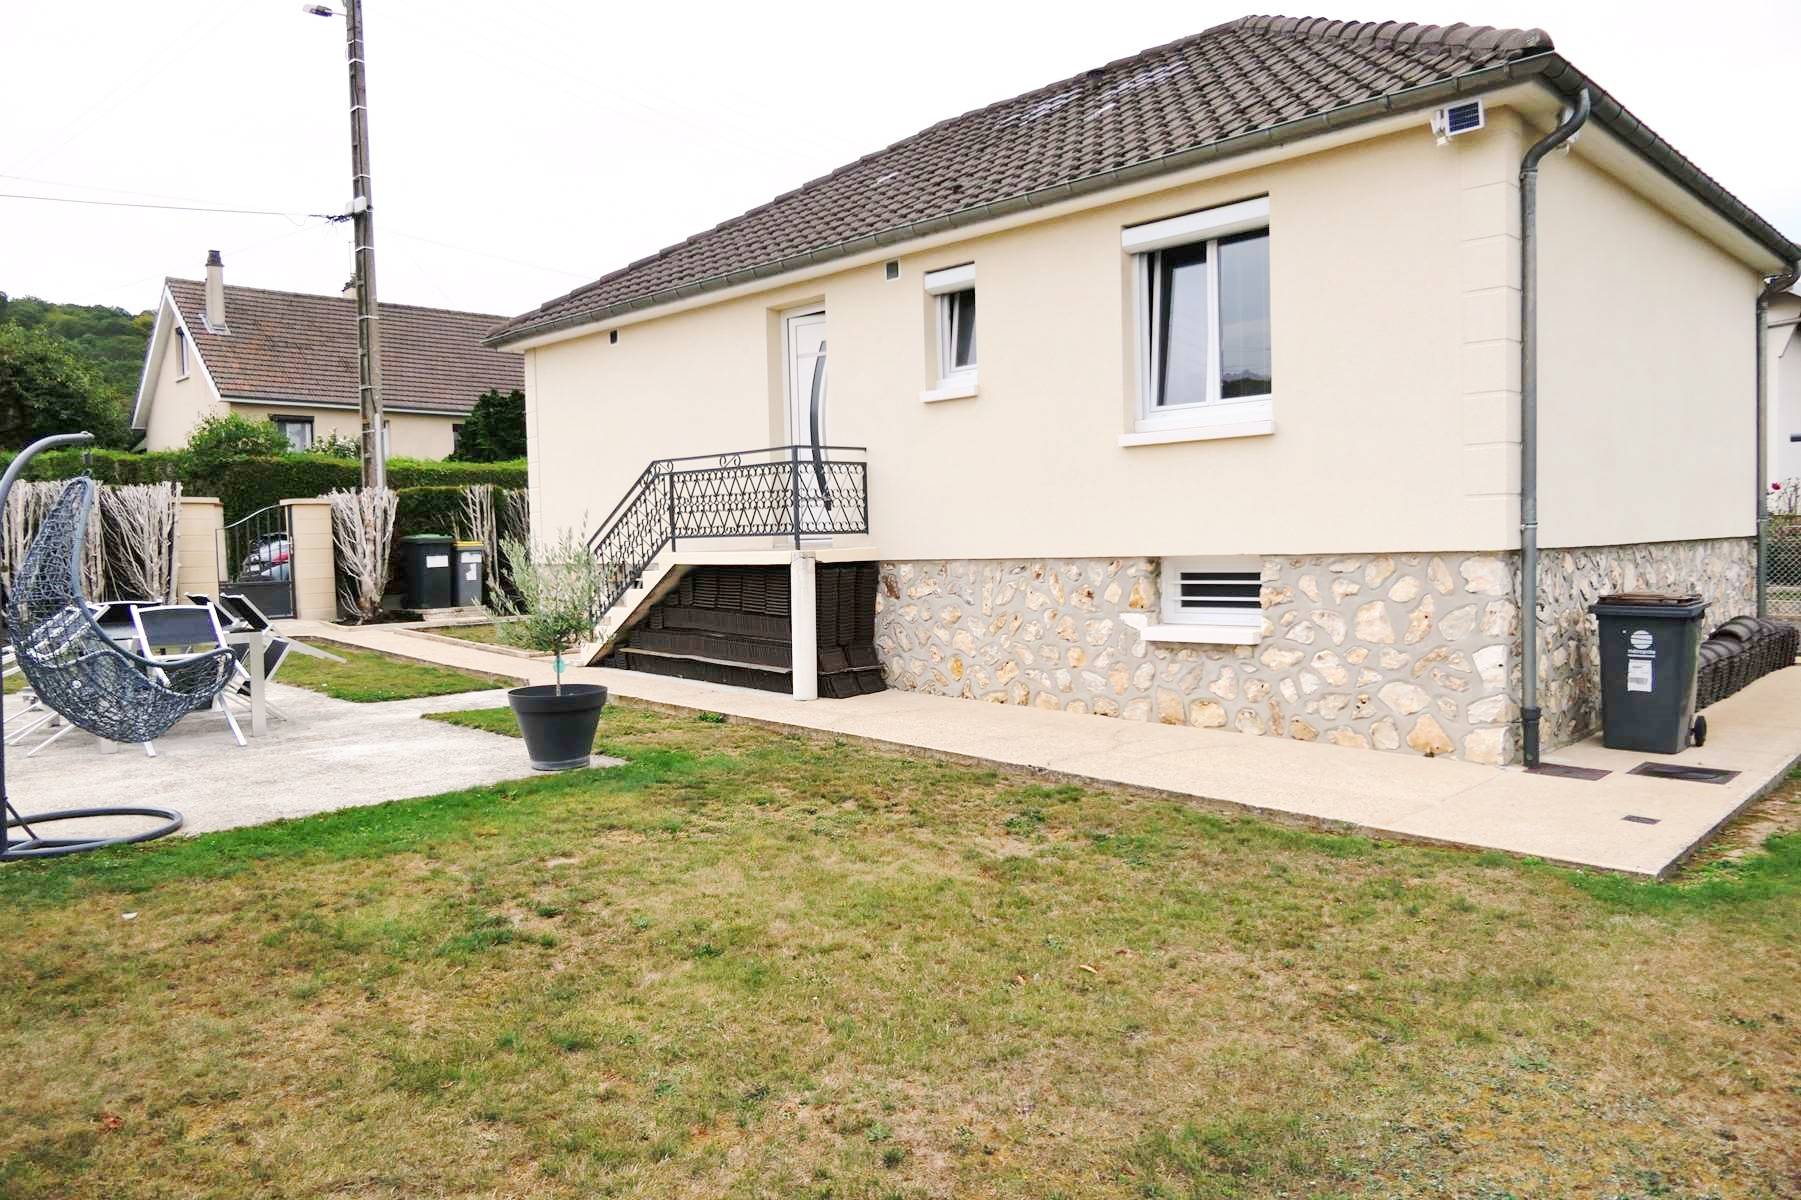 À vendre maison plain pied sur la commune de Saint-Pierre-les-Elbeuf 76320